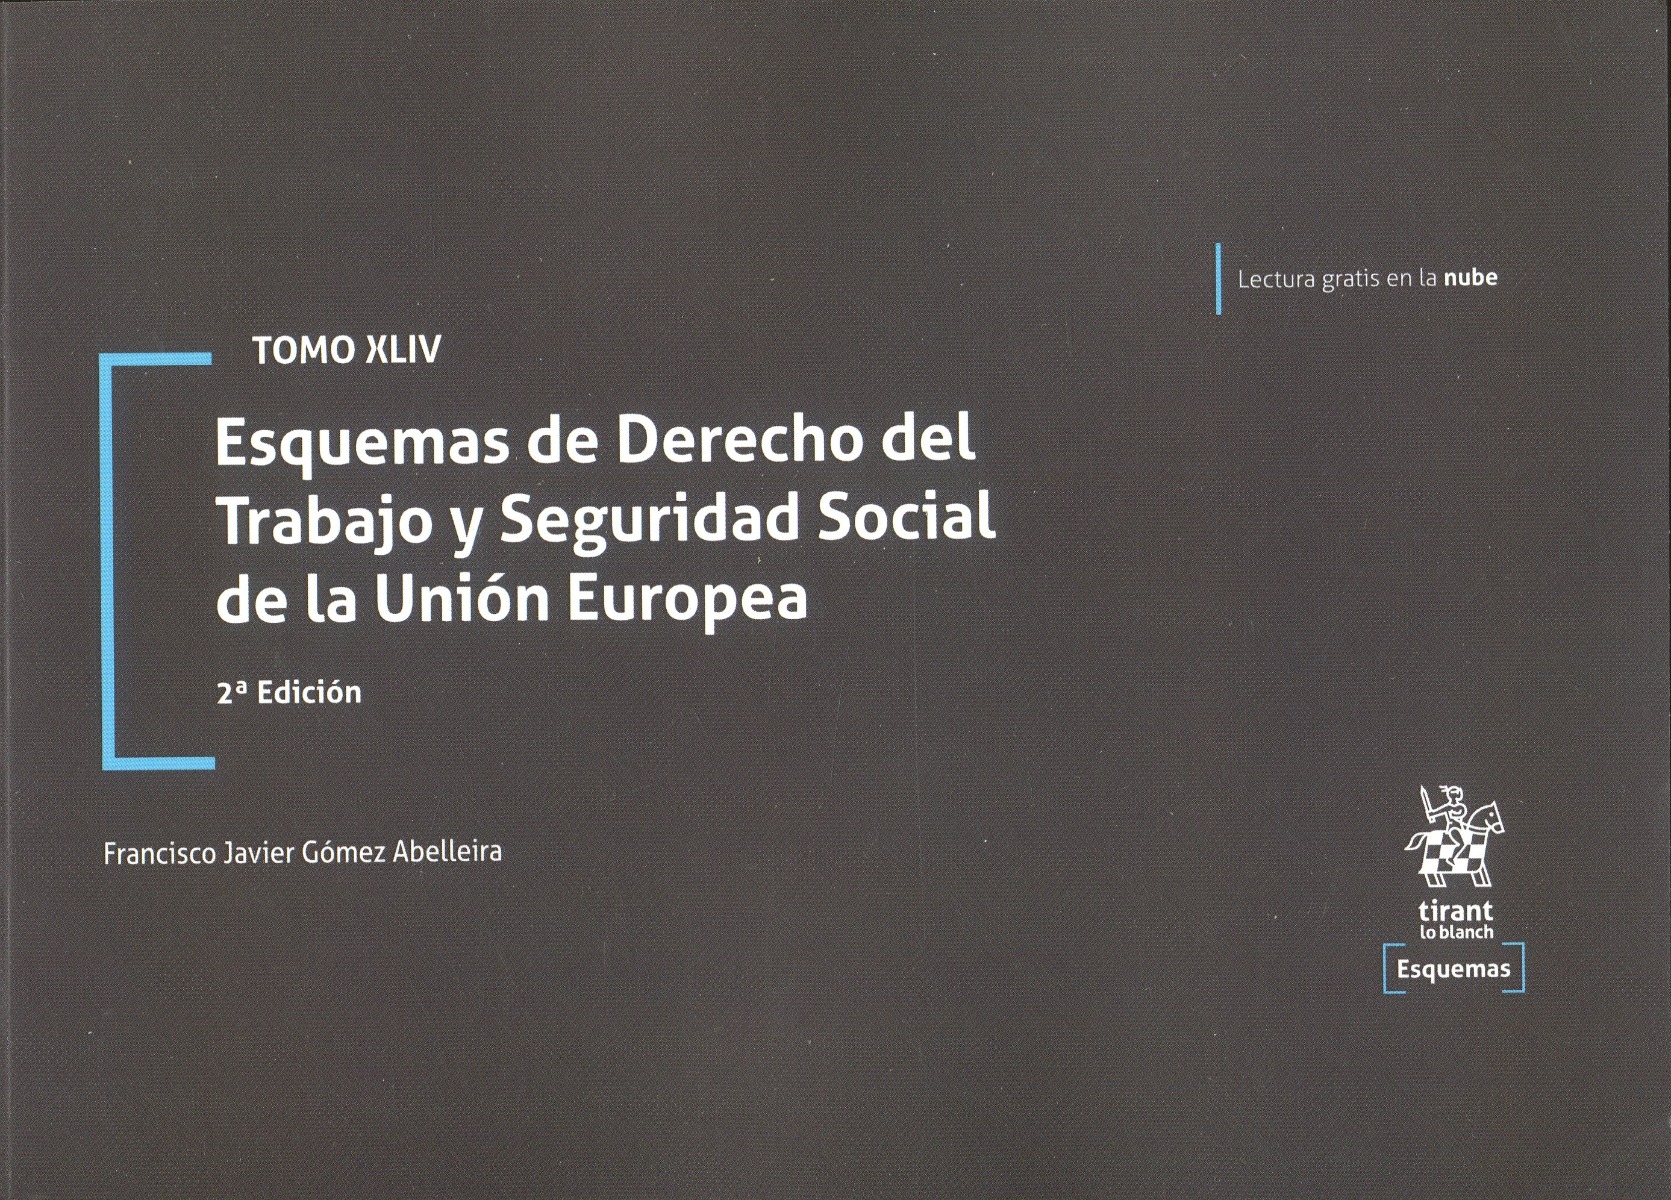 Esquemas de Derecho del Trabajo y Seguridad Social de la Unión Europea. Tomo XLIV-0